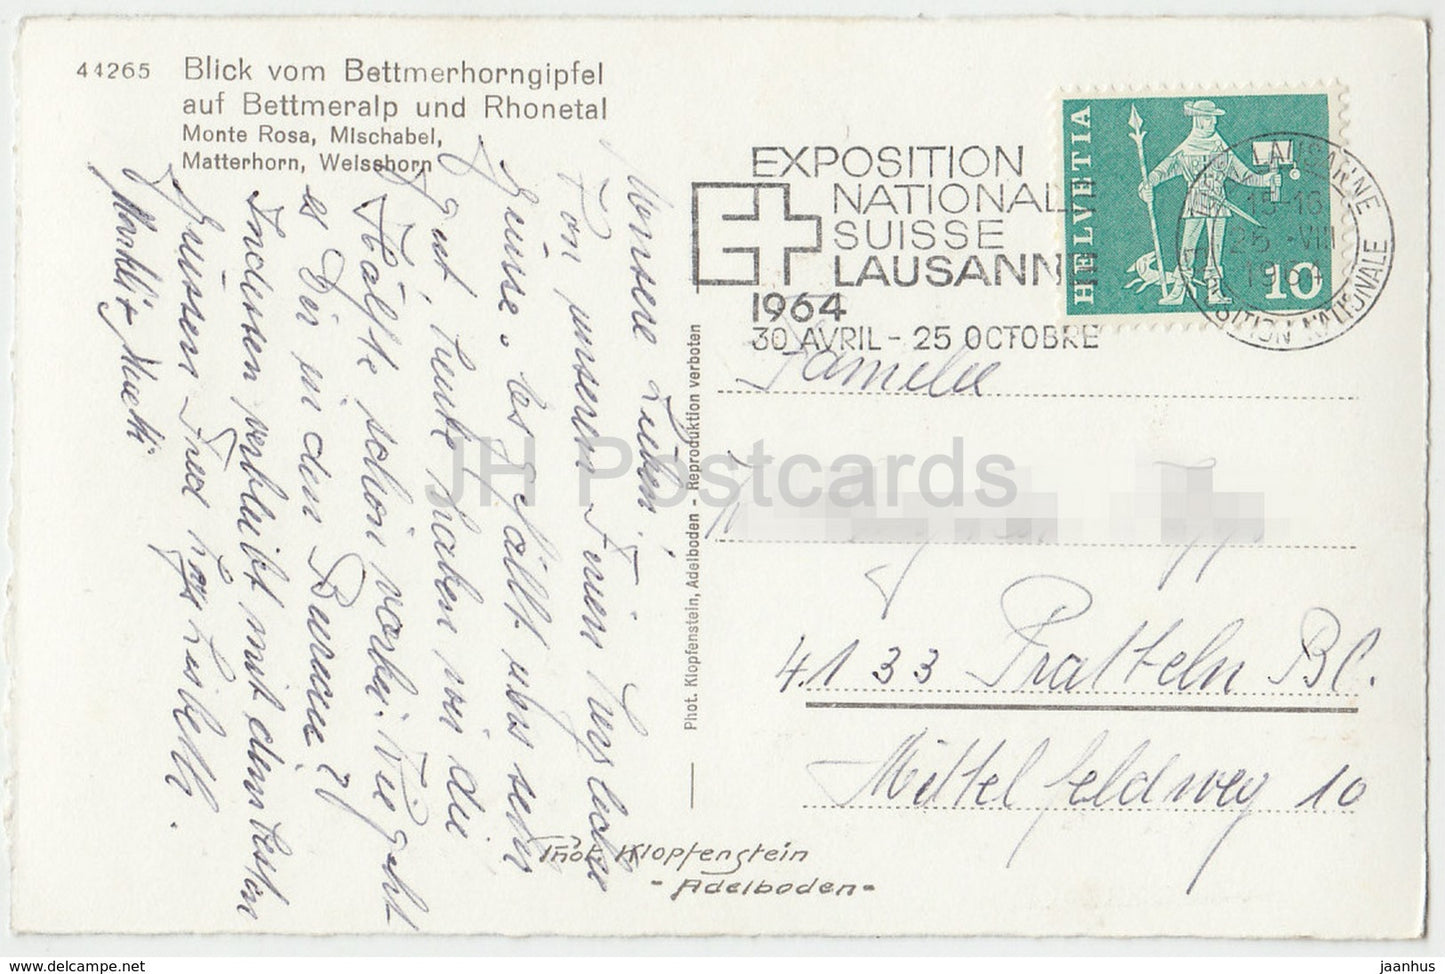 Blick vom Bettmerhorngipfel auf Bettmeralp und Rhonetal - 44265 - Switzerland - 1964 - used